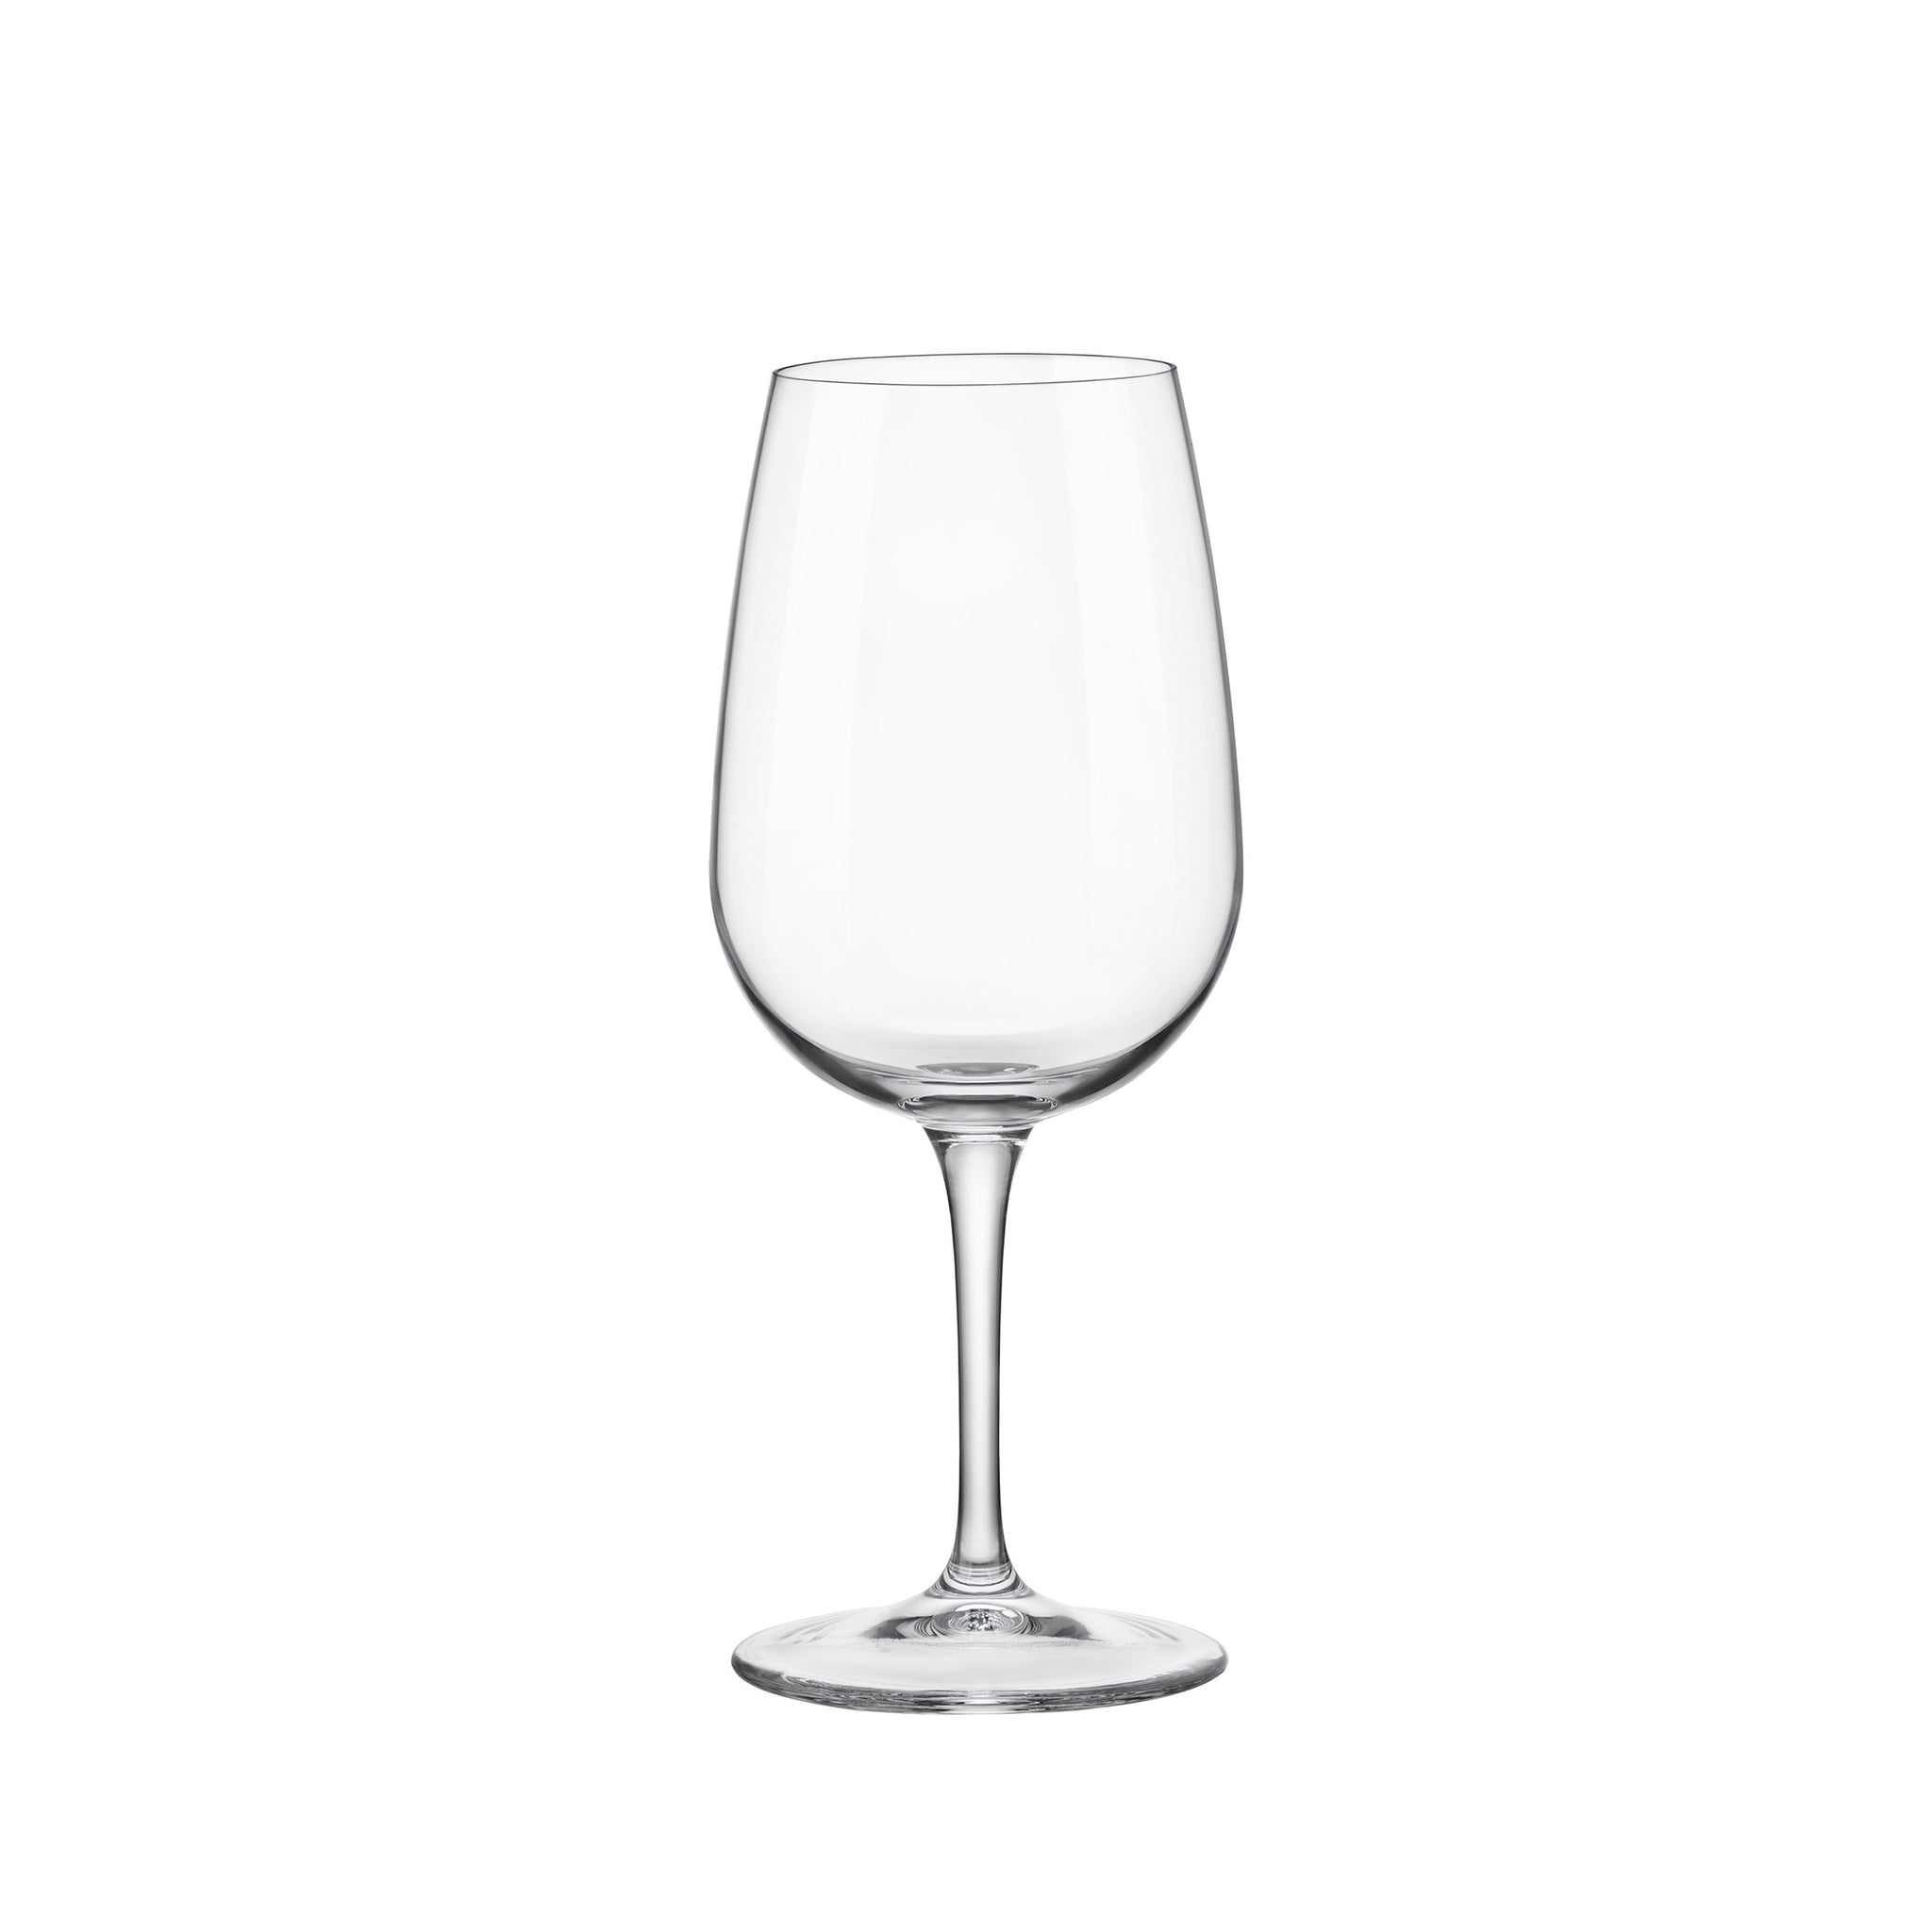 Spazio 14 oz. Medium White Wine Glasses (Set of 4)